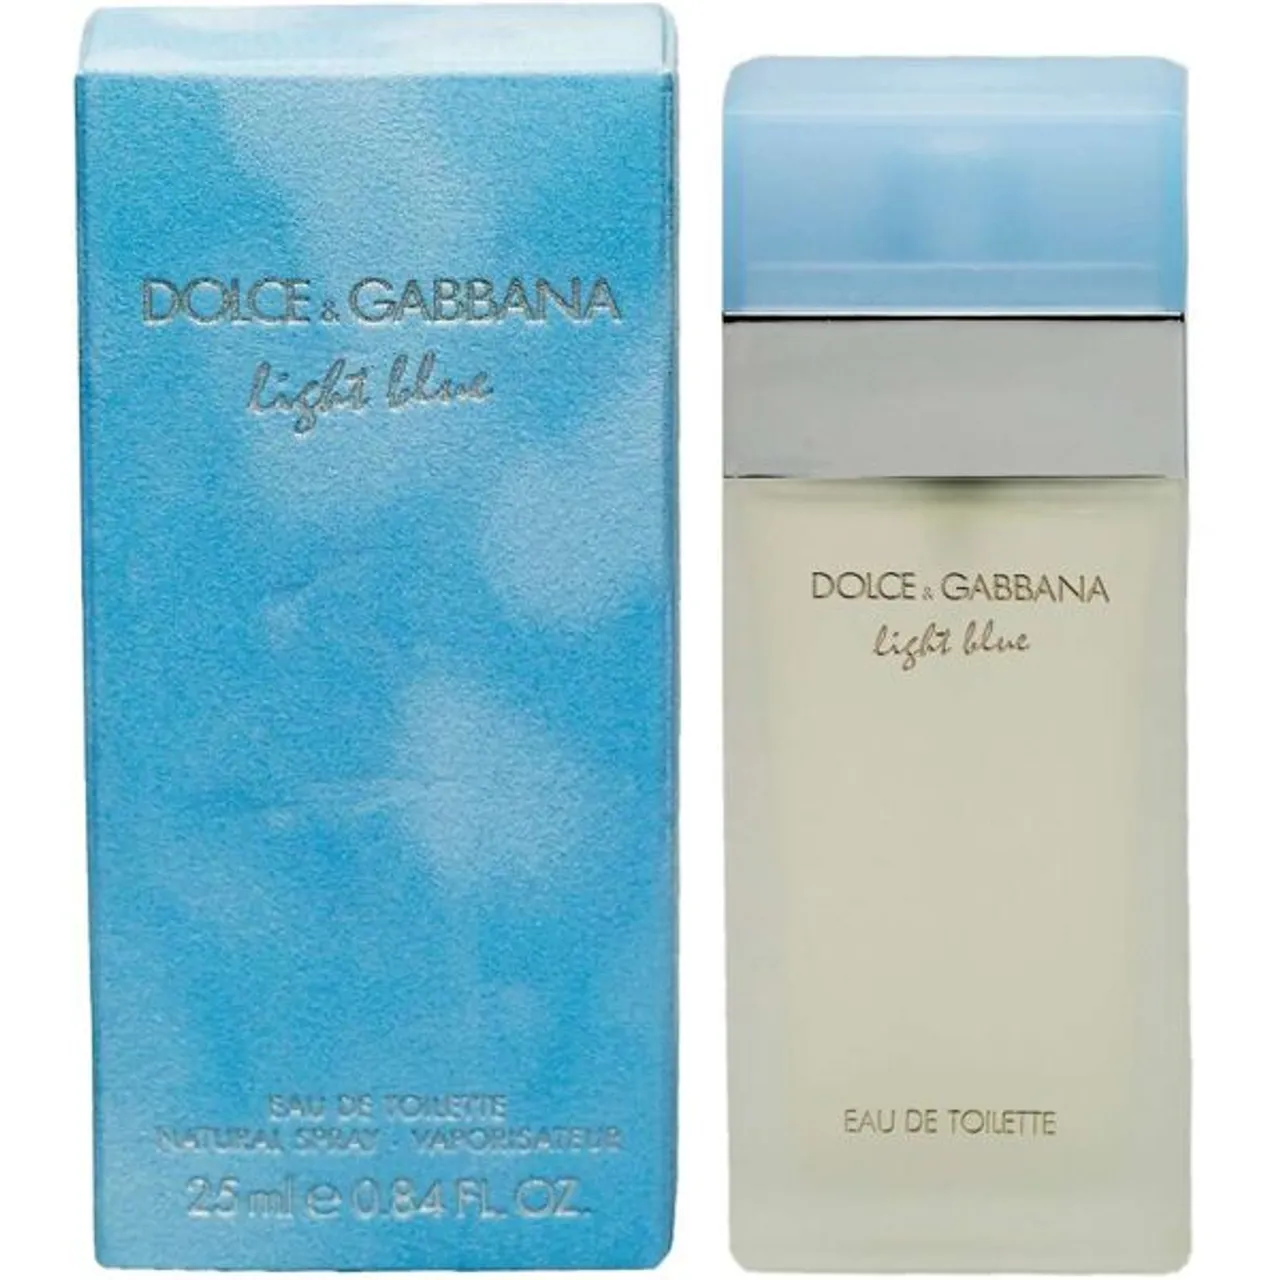 Eau de Toilette DOLCE & GABBANA "Light Blue" Parfüms Gr. 25 ml, blau Damen Eau de Toilette